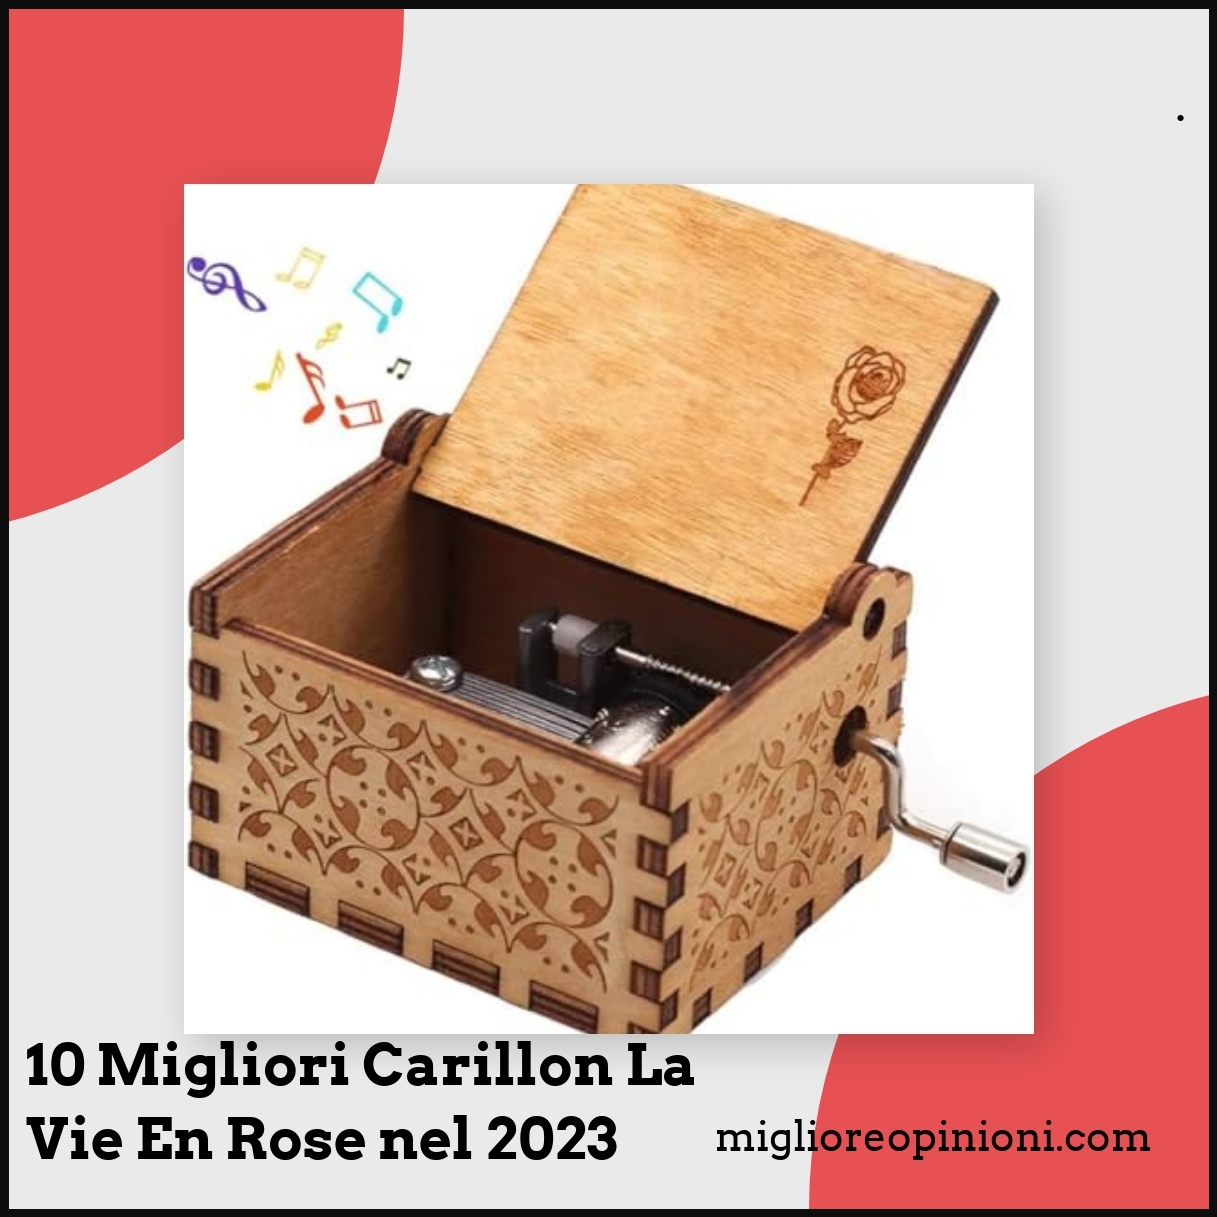 10 Migliori Carillon La Vie En Rose nel 2023